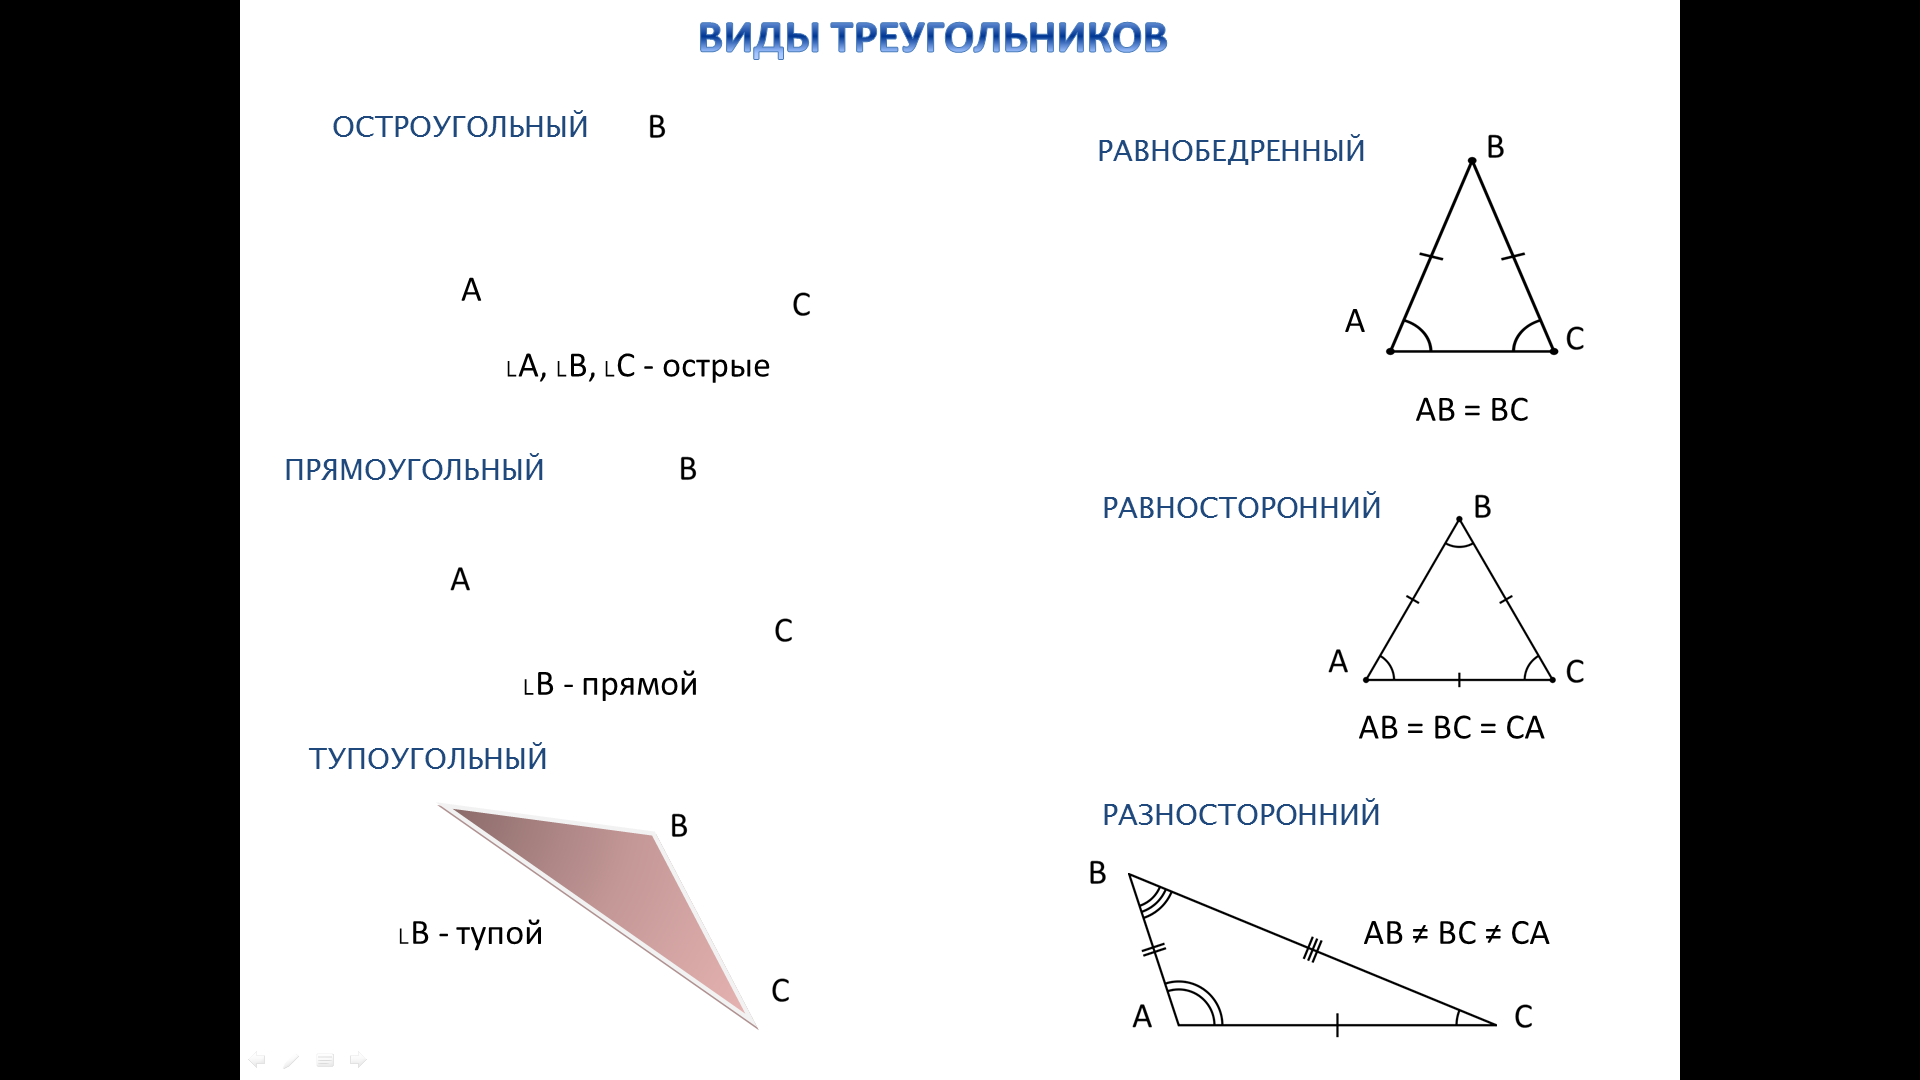 Может ли тупоугольный треугольник быть равнобедренным. Виды треугольников. Равнобедренный остроугольный треугольник. Равнобедренный треугольник тупоугольный треугольник.